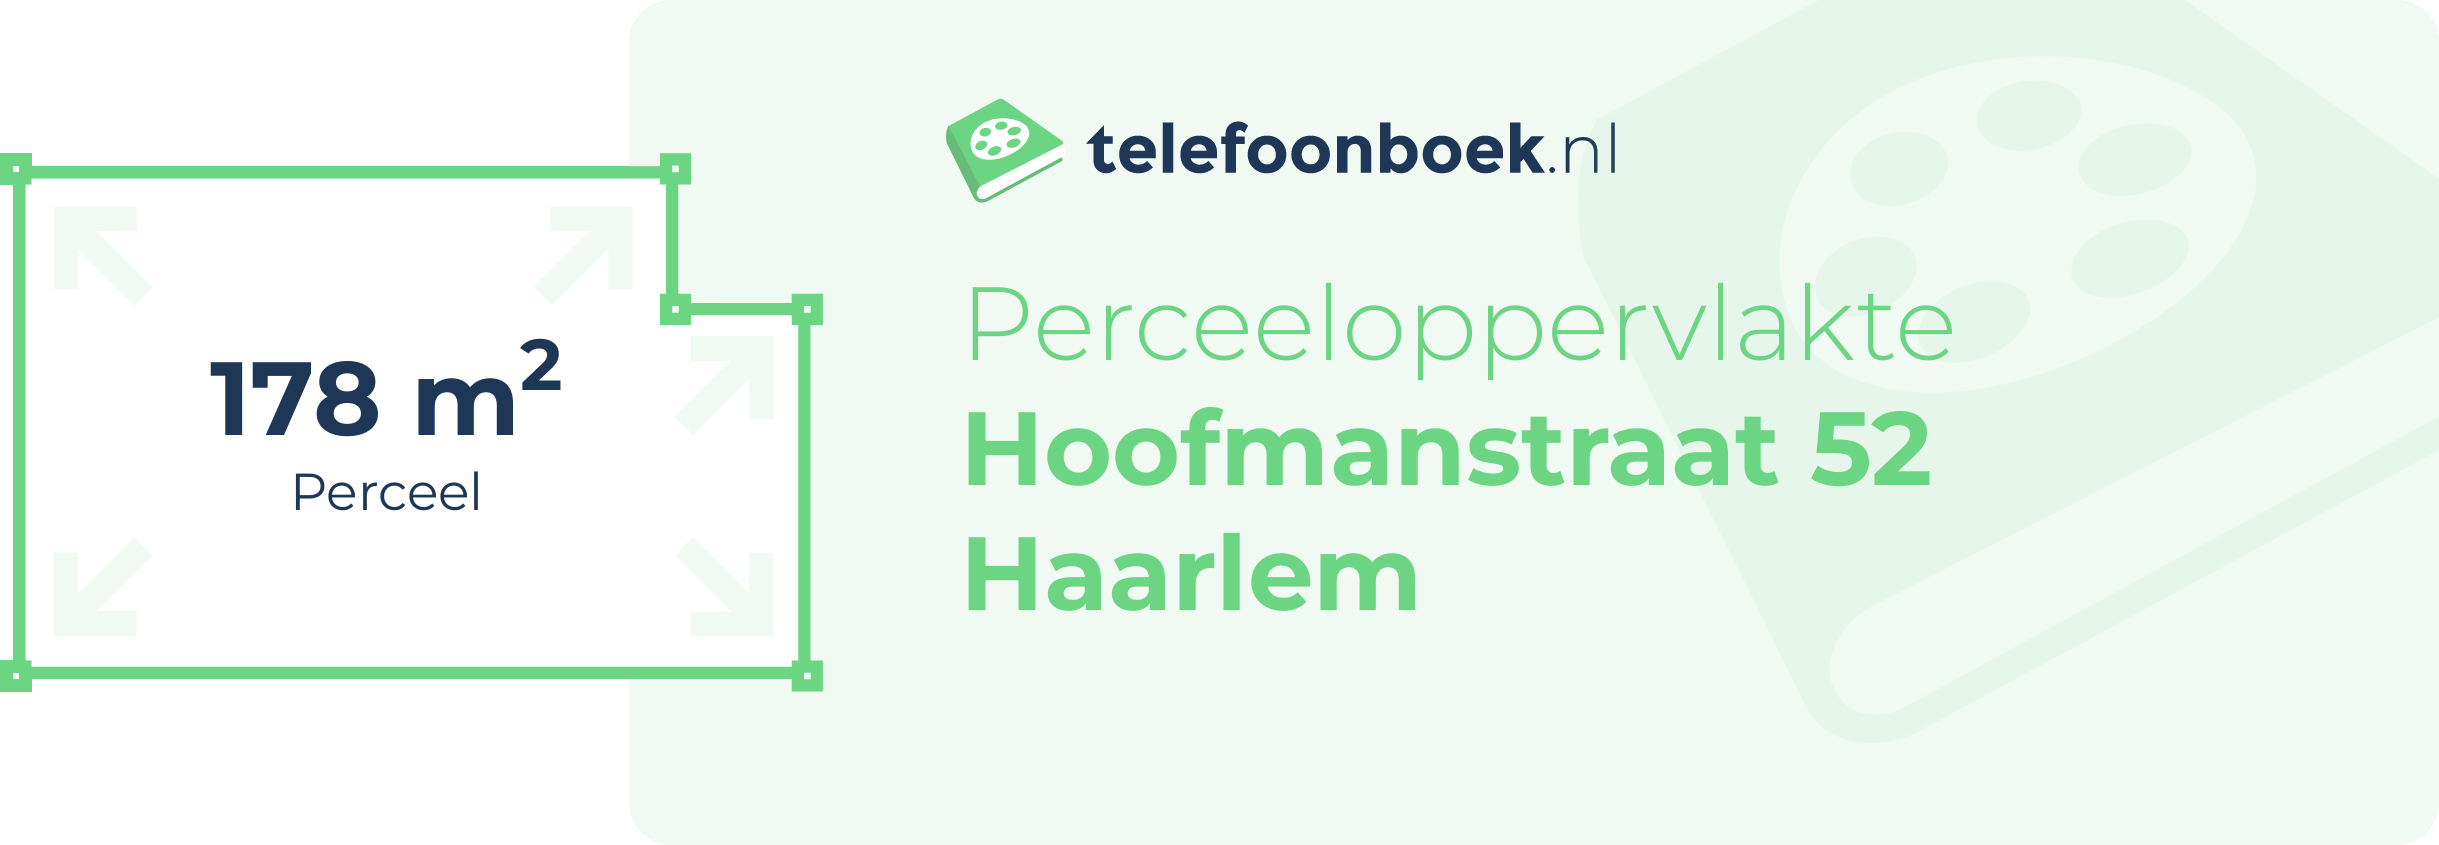 Perceeloppervlakte Hoofmanstraat 52 Haarlem